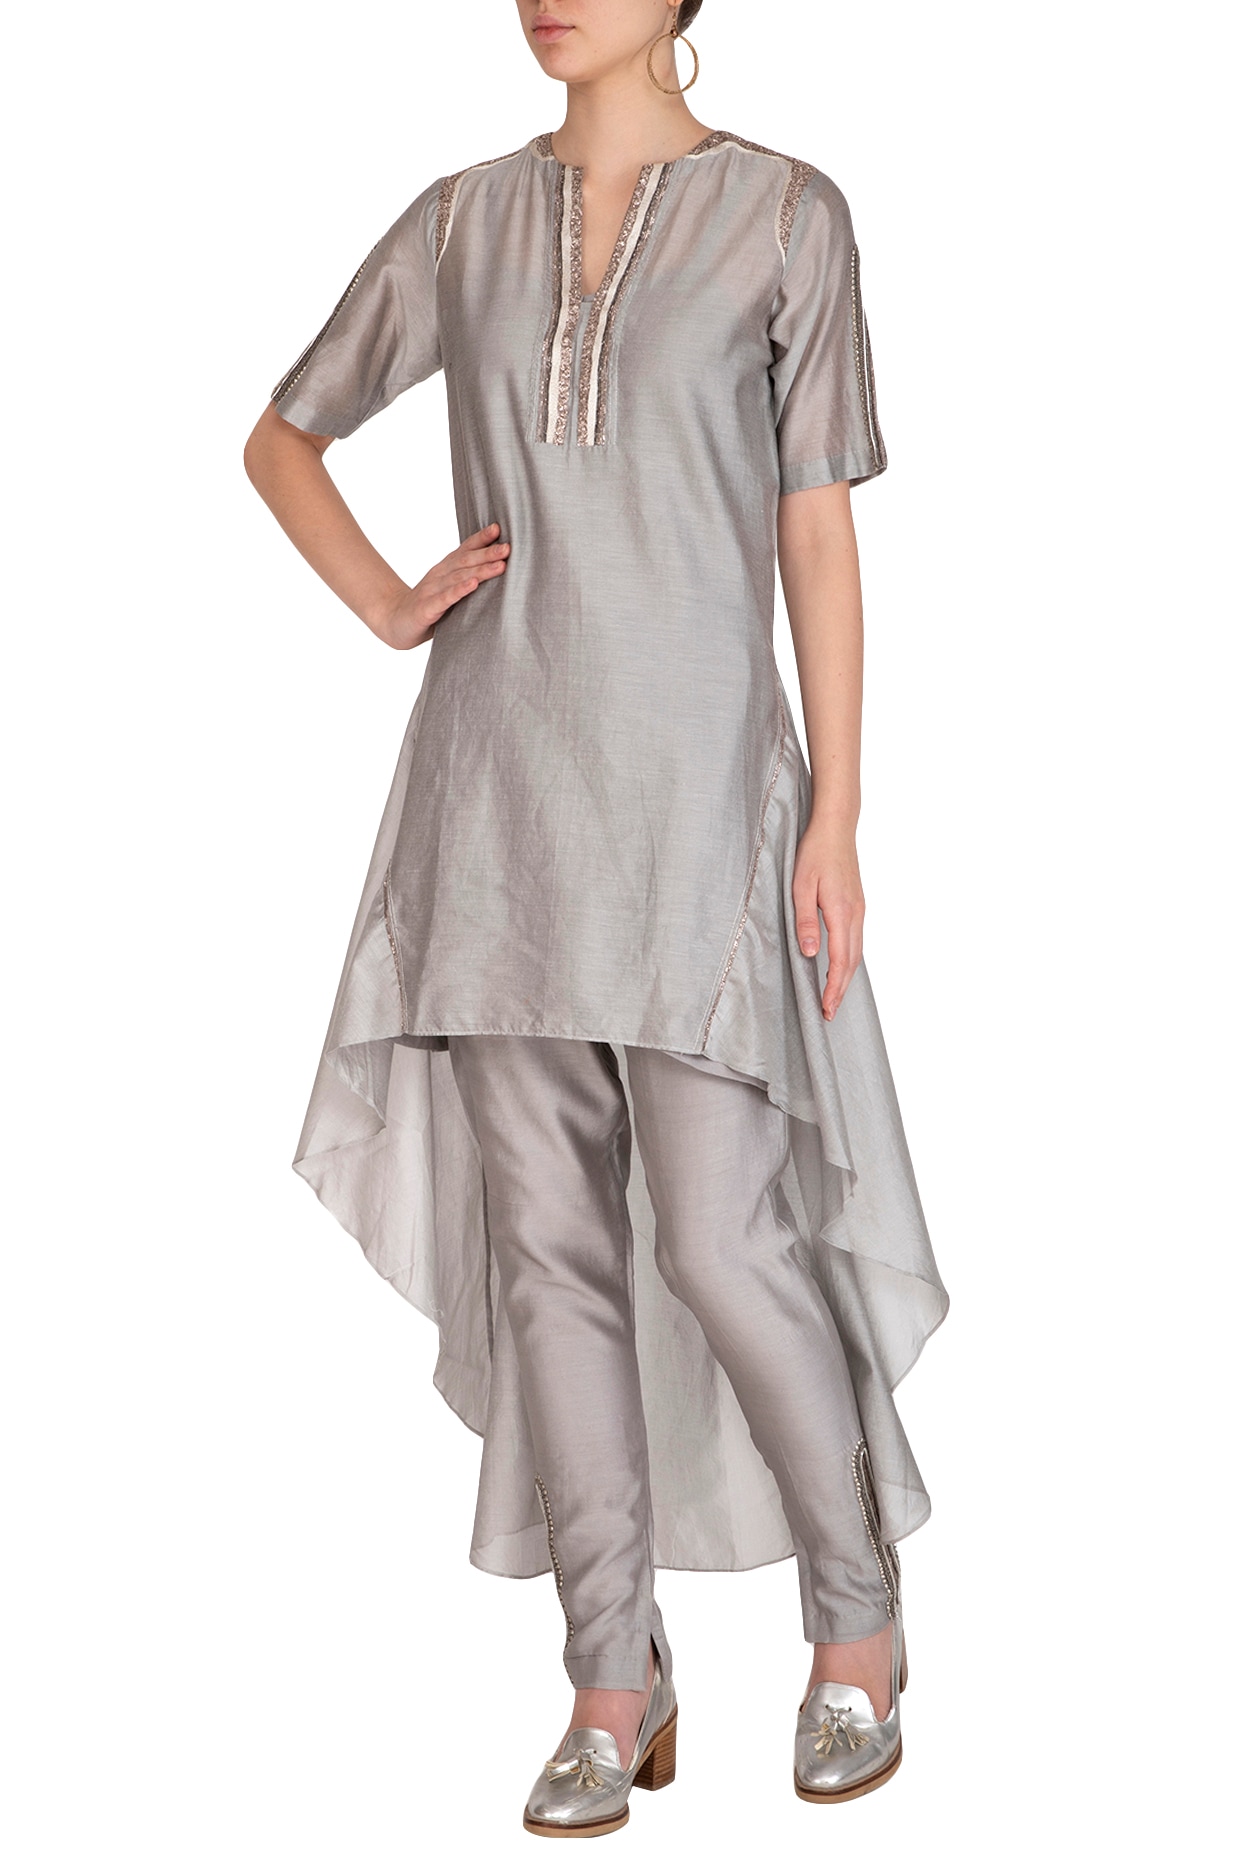 Pink woven cotton silk a line kids salwar suits - NIKHAAR - 4186506